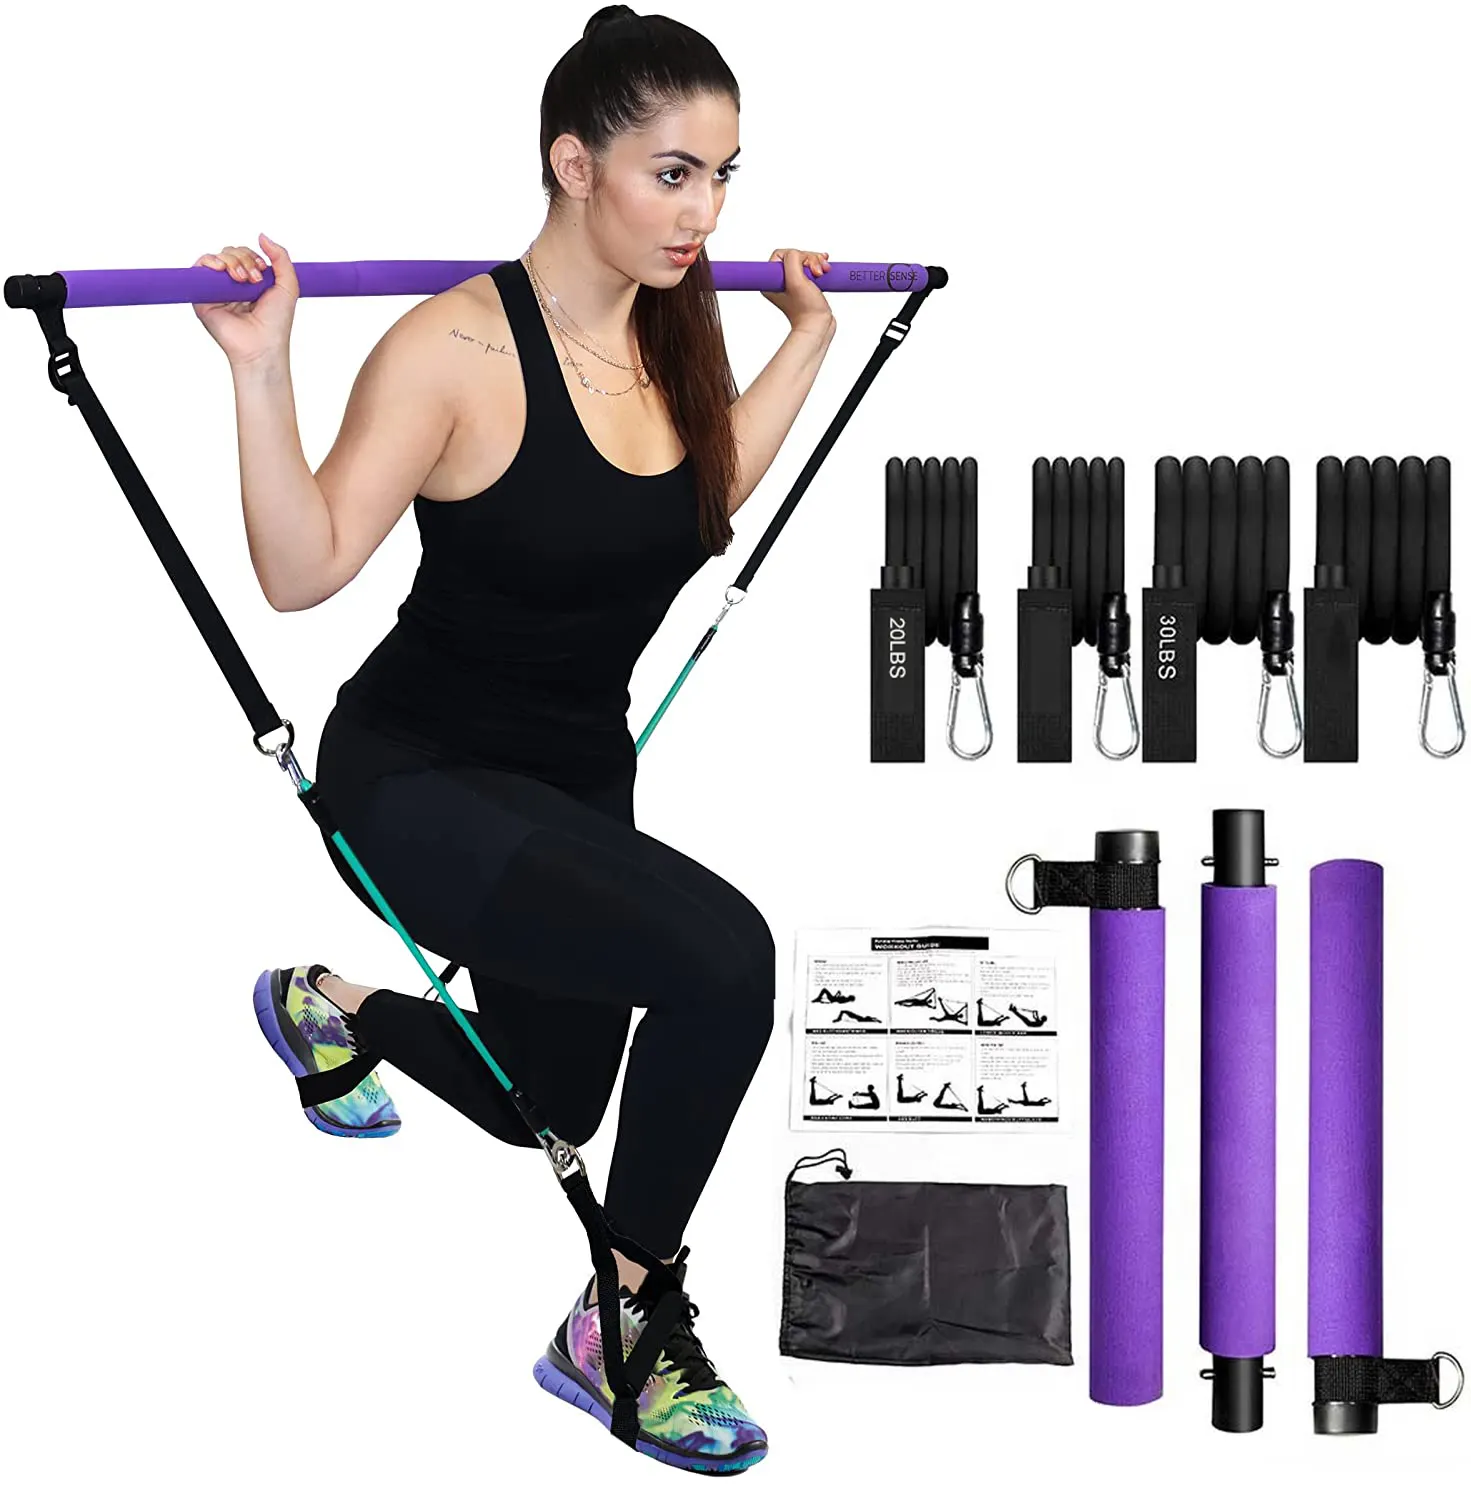 Tragbares Pilates Bar Kit mit Widerstands bändern/Fitness-Yoga-Übungs stange/verstellbarer 3-teiliger Pilates Bar Stick